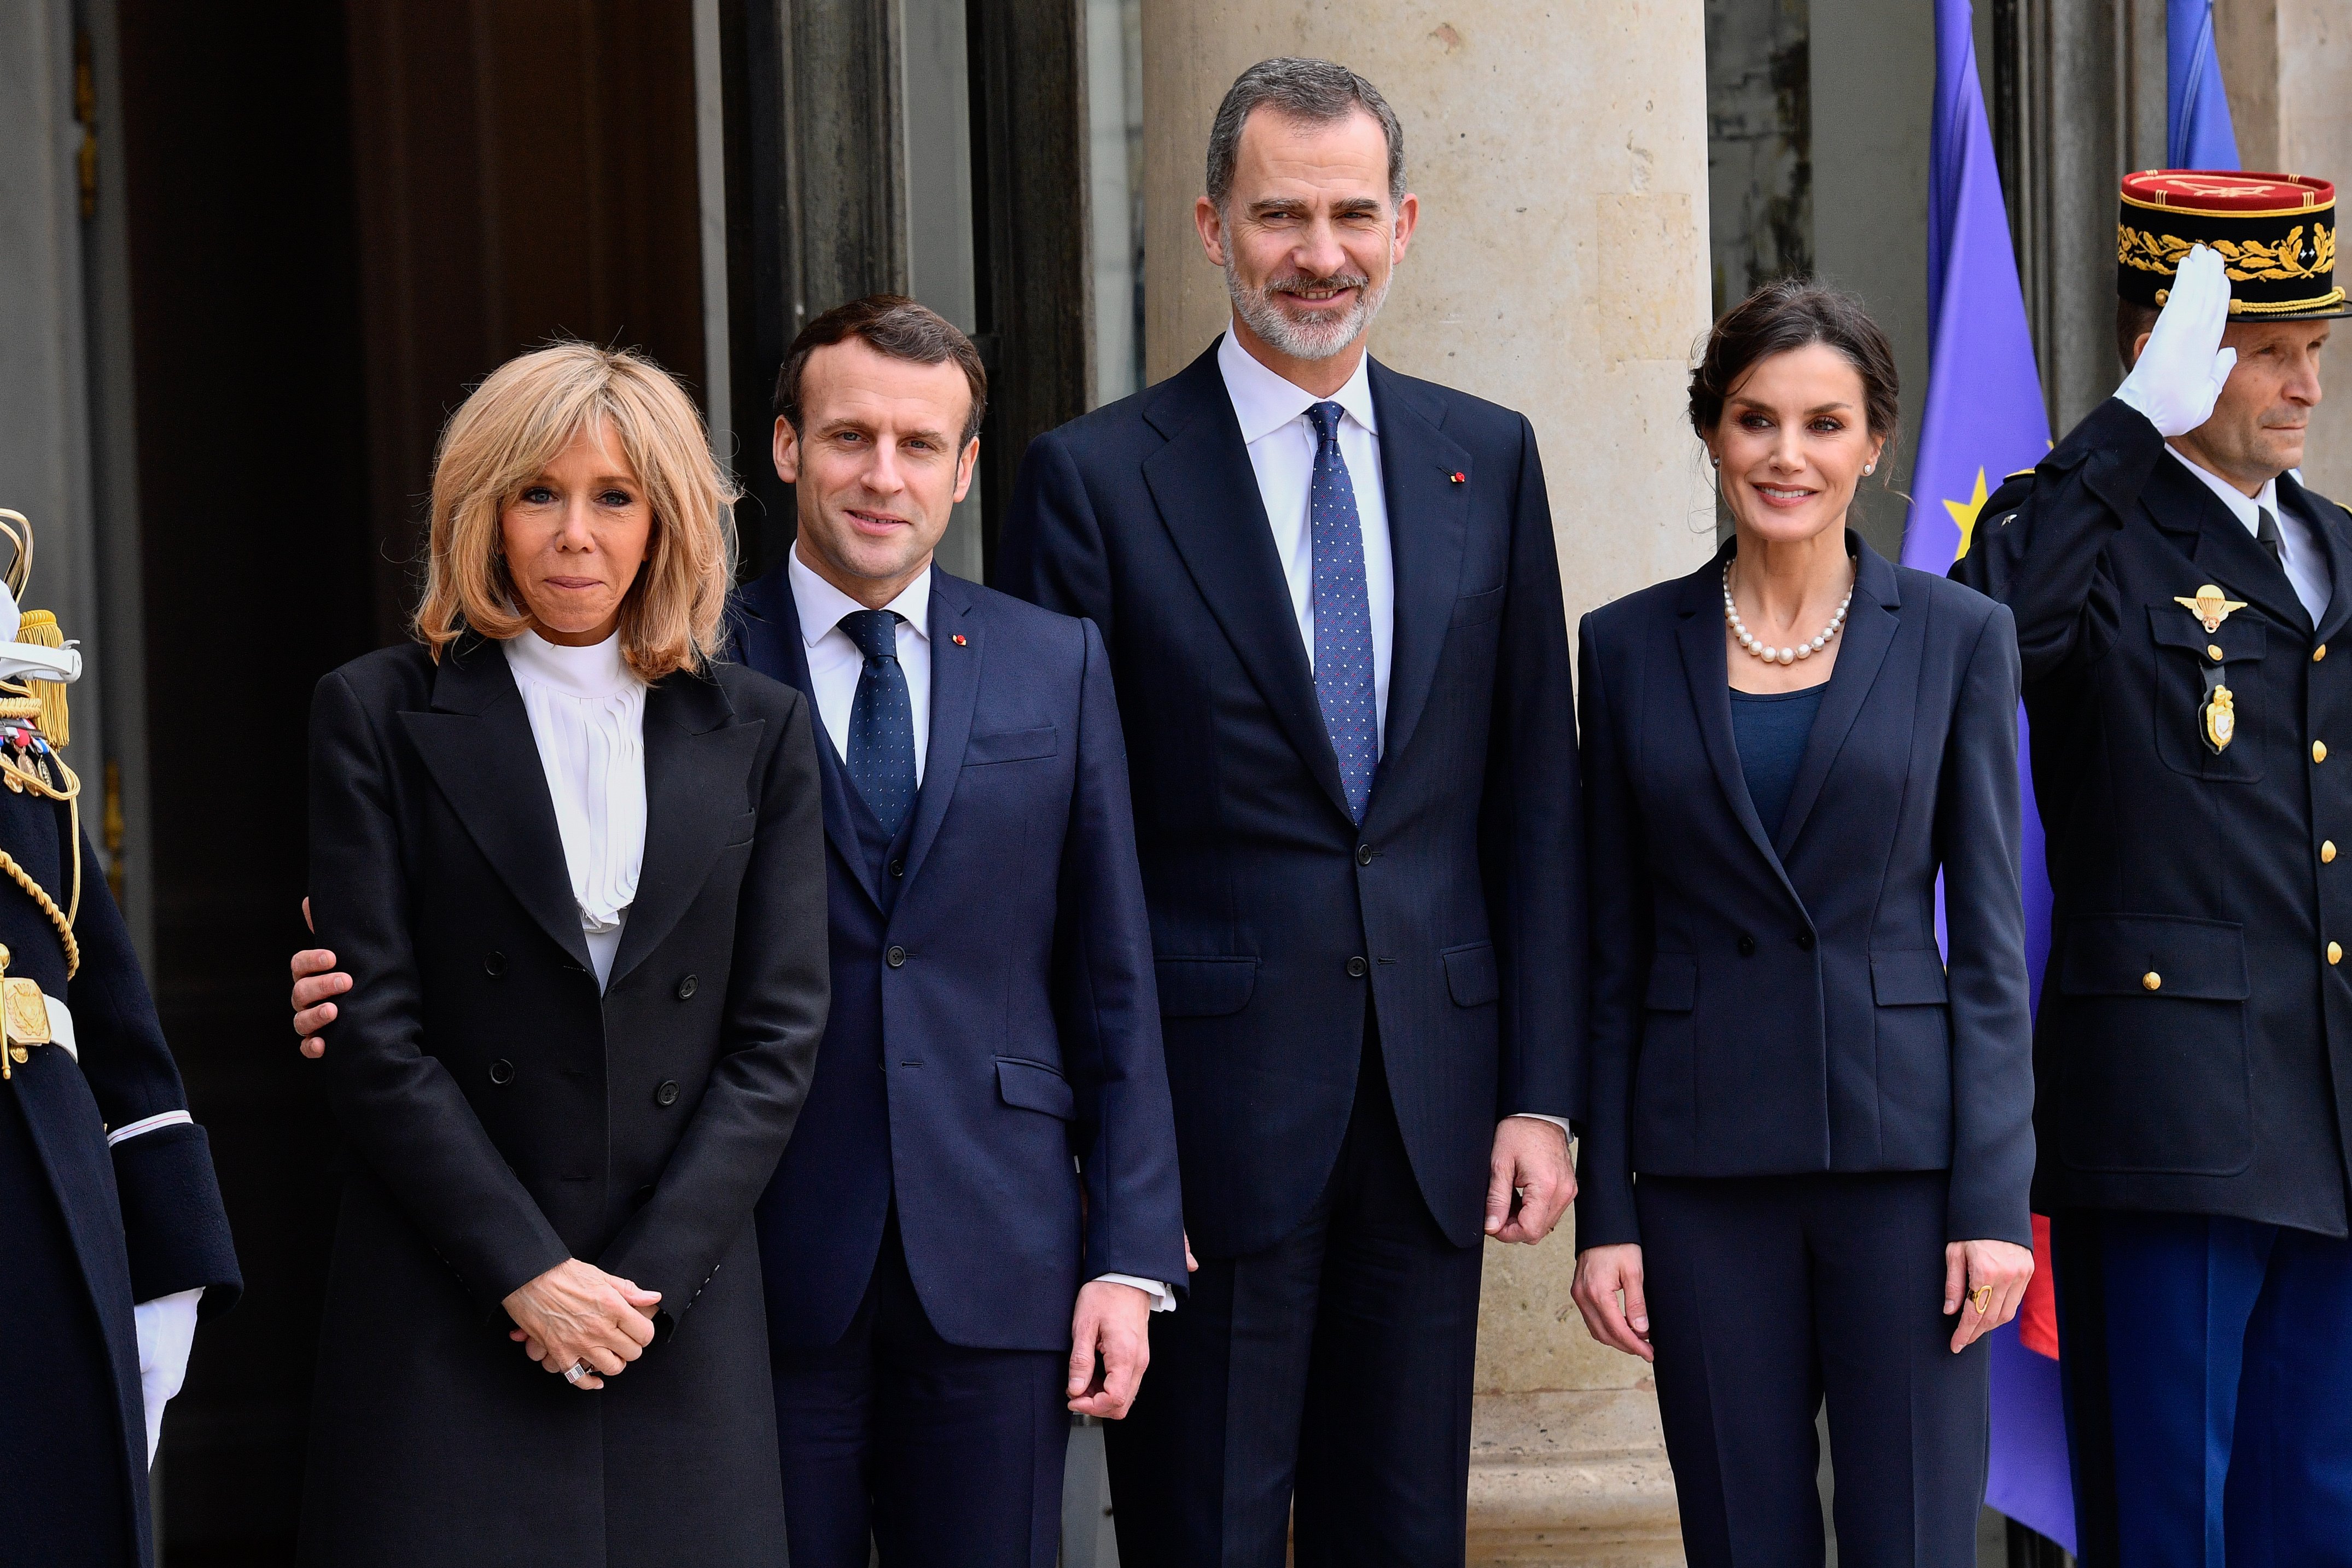 El presidente francés, Emmanuel Macron, y su esposa Brigitte Macron se reúnen con el rey y la reina de España, Felipe VI y Letizia, en el Palacio del Elíseo en París, Francia, el 11 de marzo de 2020. | Foto: Getty images